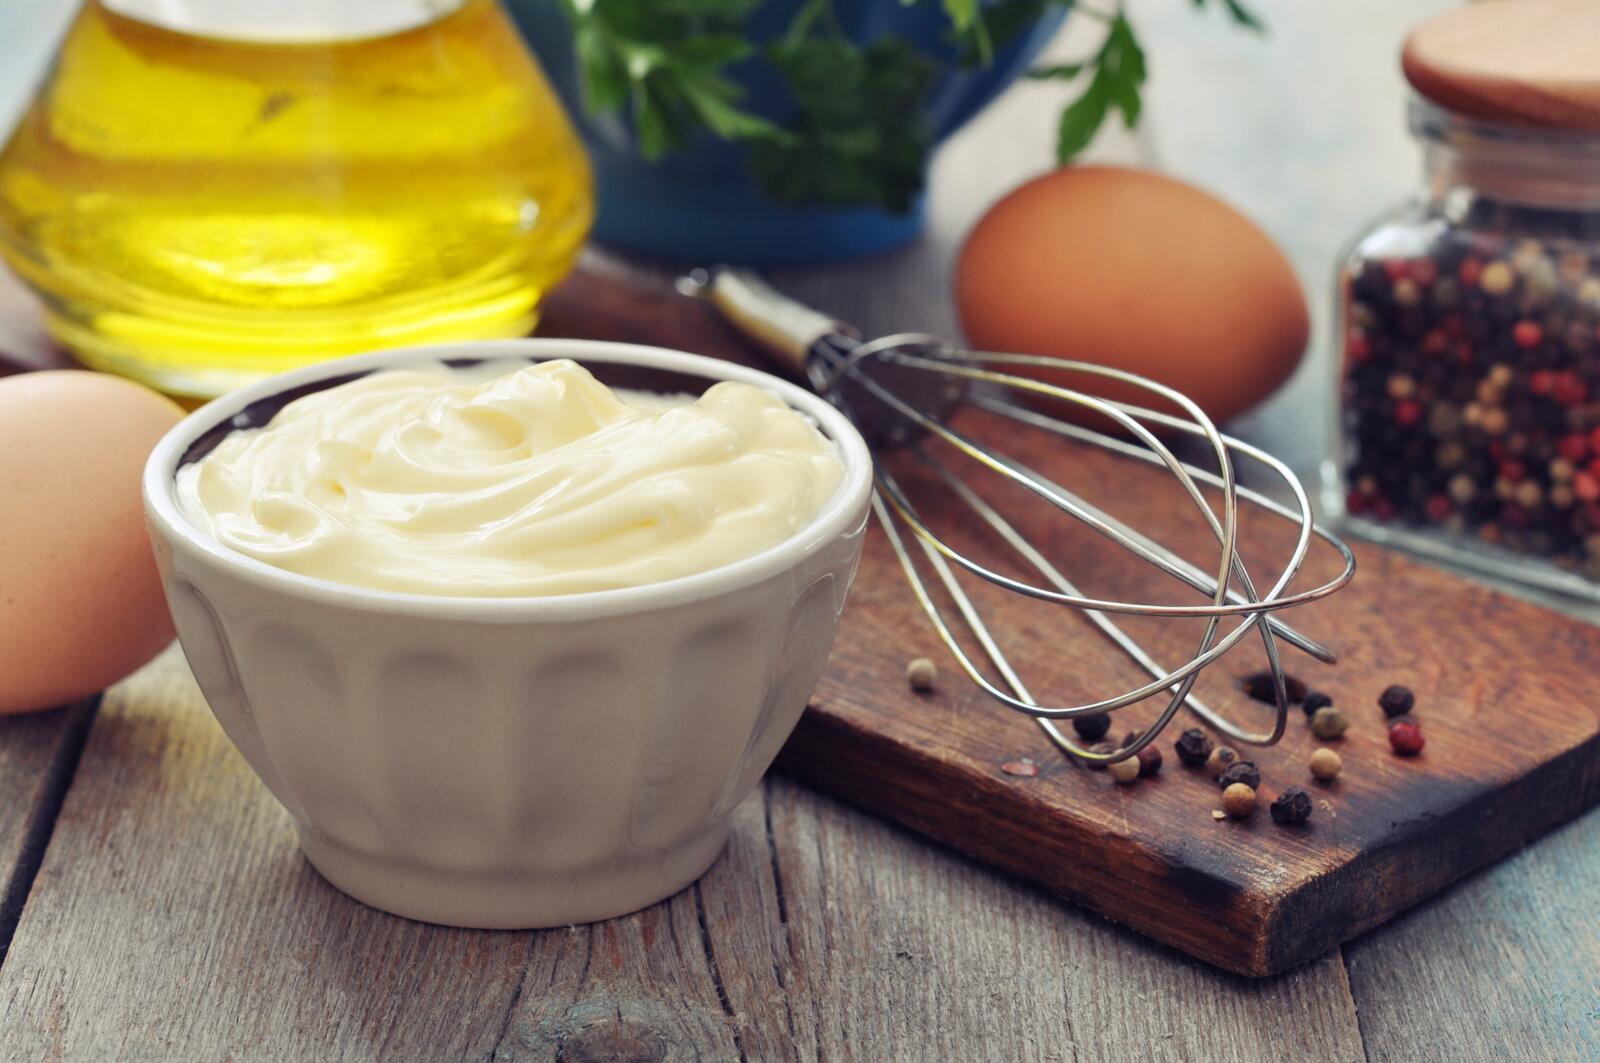 Hoe lang kan zelfgemaakte mayonaise bewaard worden? | Dagelijkse kost